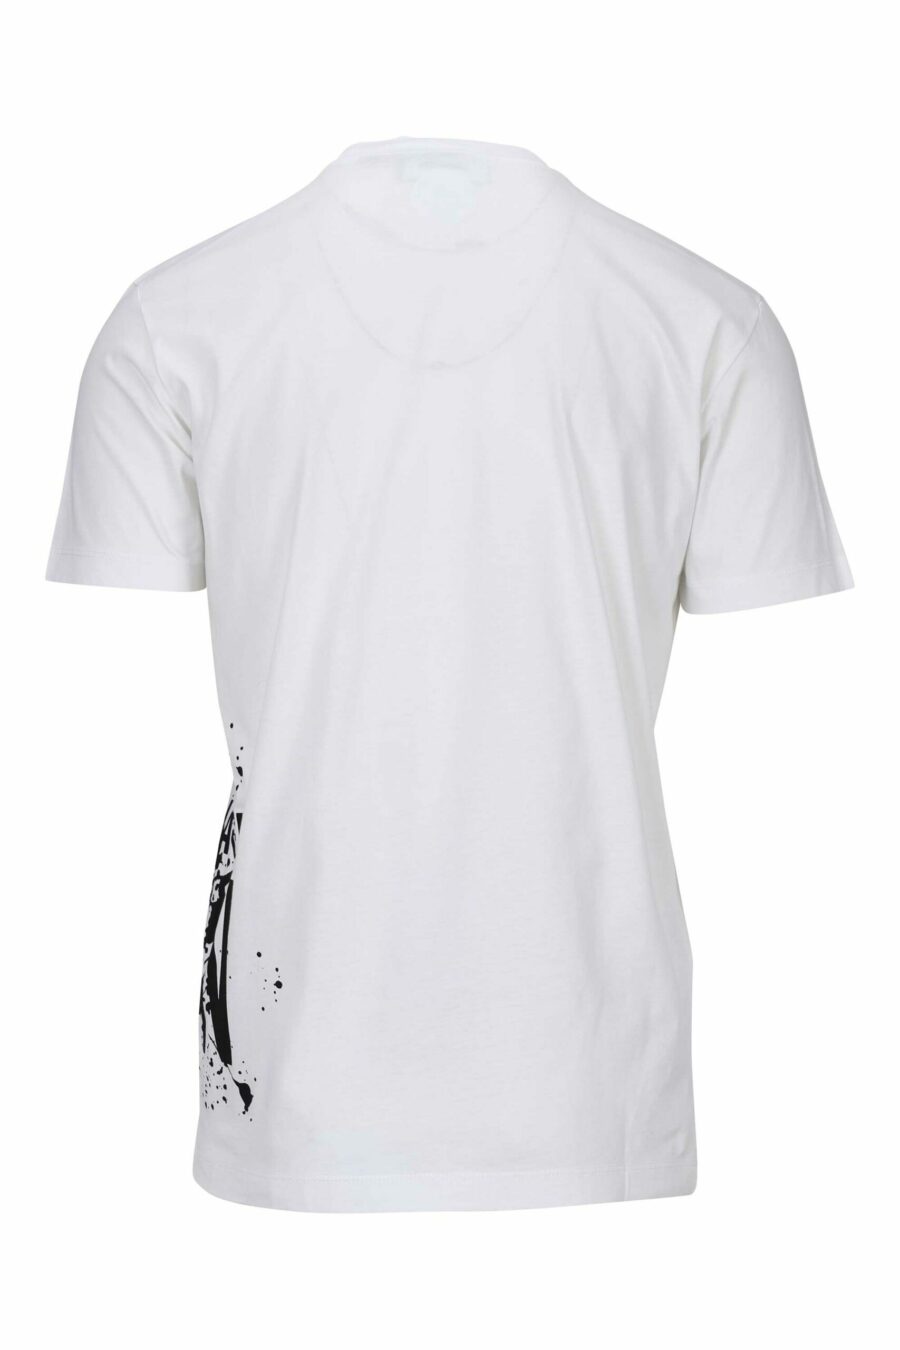 White T-shirt with "icon splash" maxilogo underneath - 8054148358549 1 scaled